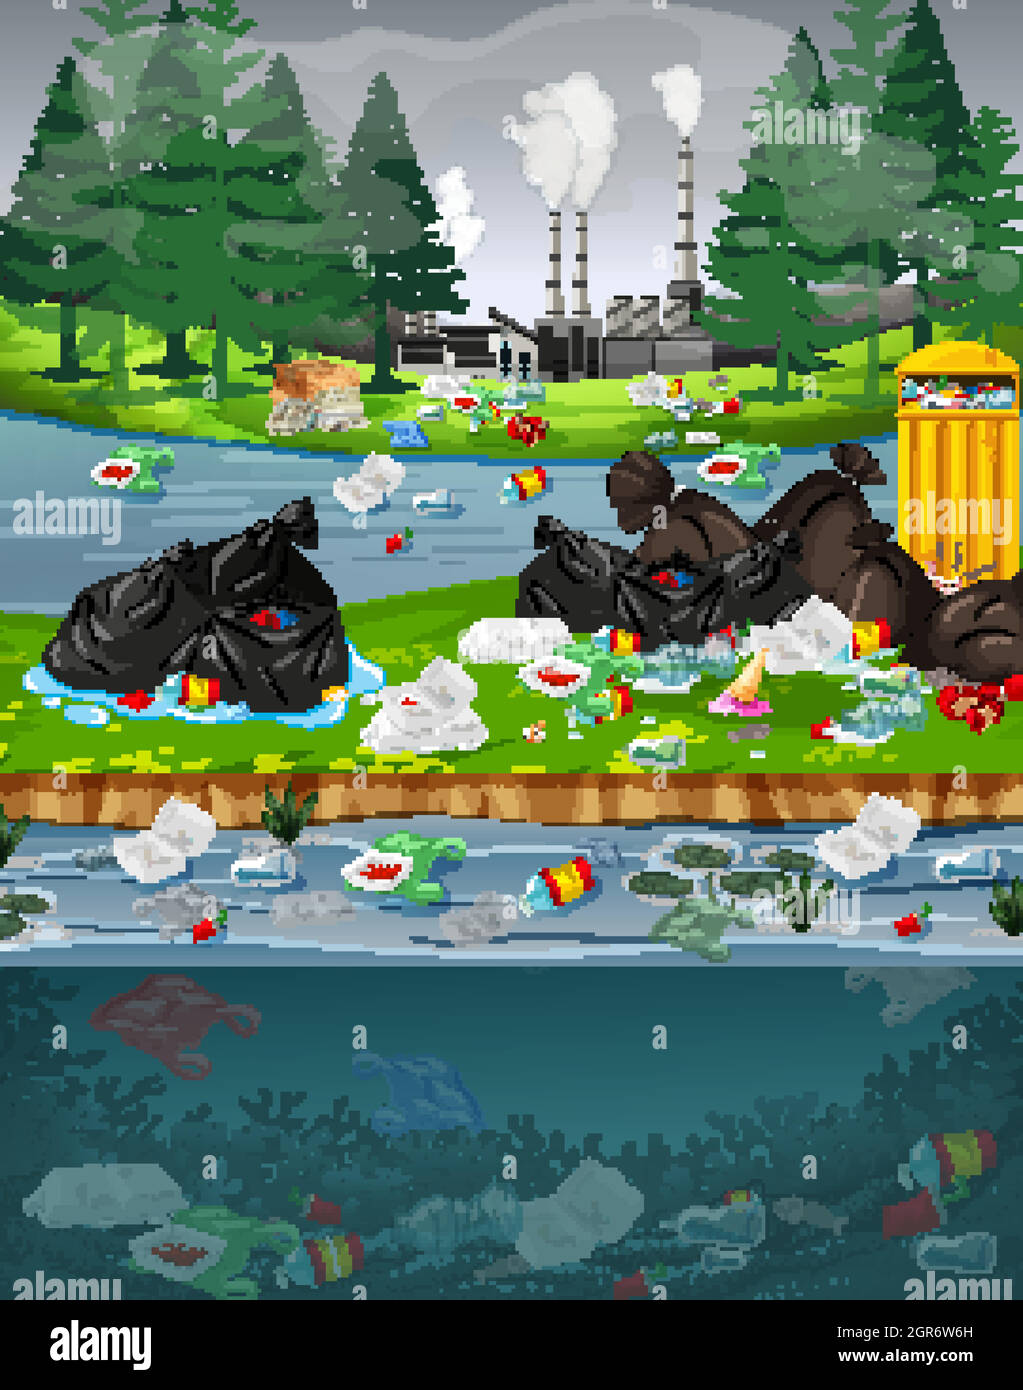 Inquinamento idrico con sacchi di plastica nel parco Illustrazione Vettoriale